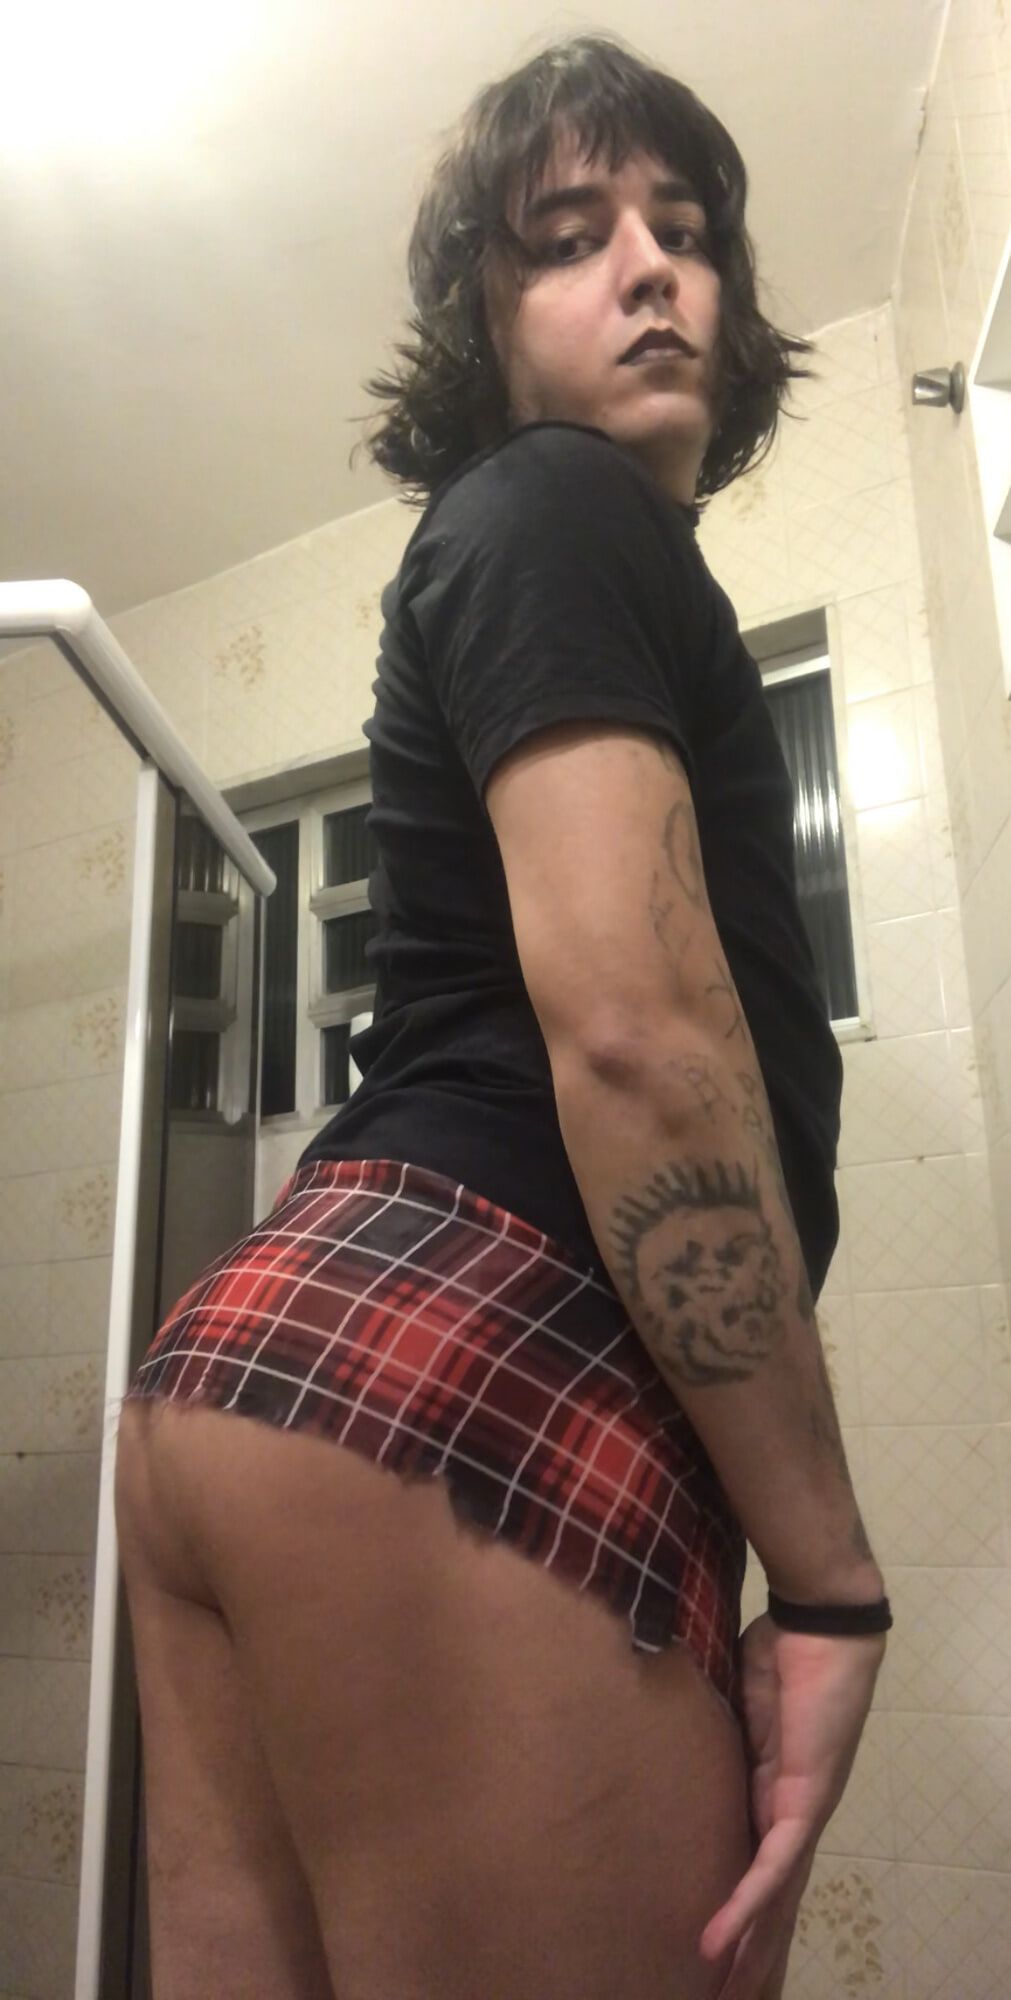 Shemale big ass brazilian punk tgirl latina plaid skirt #8